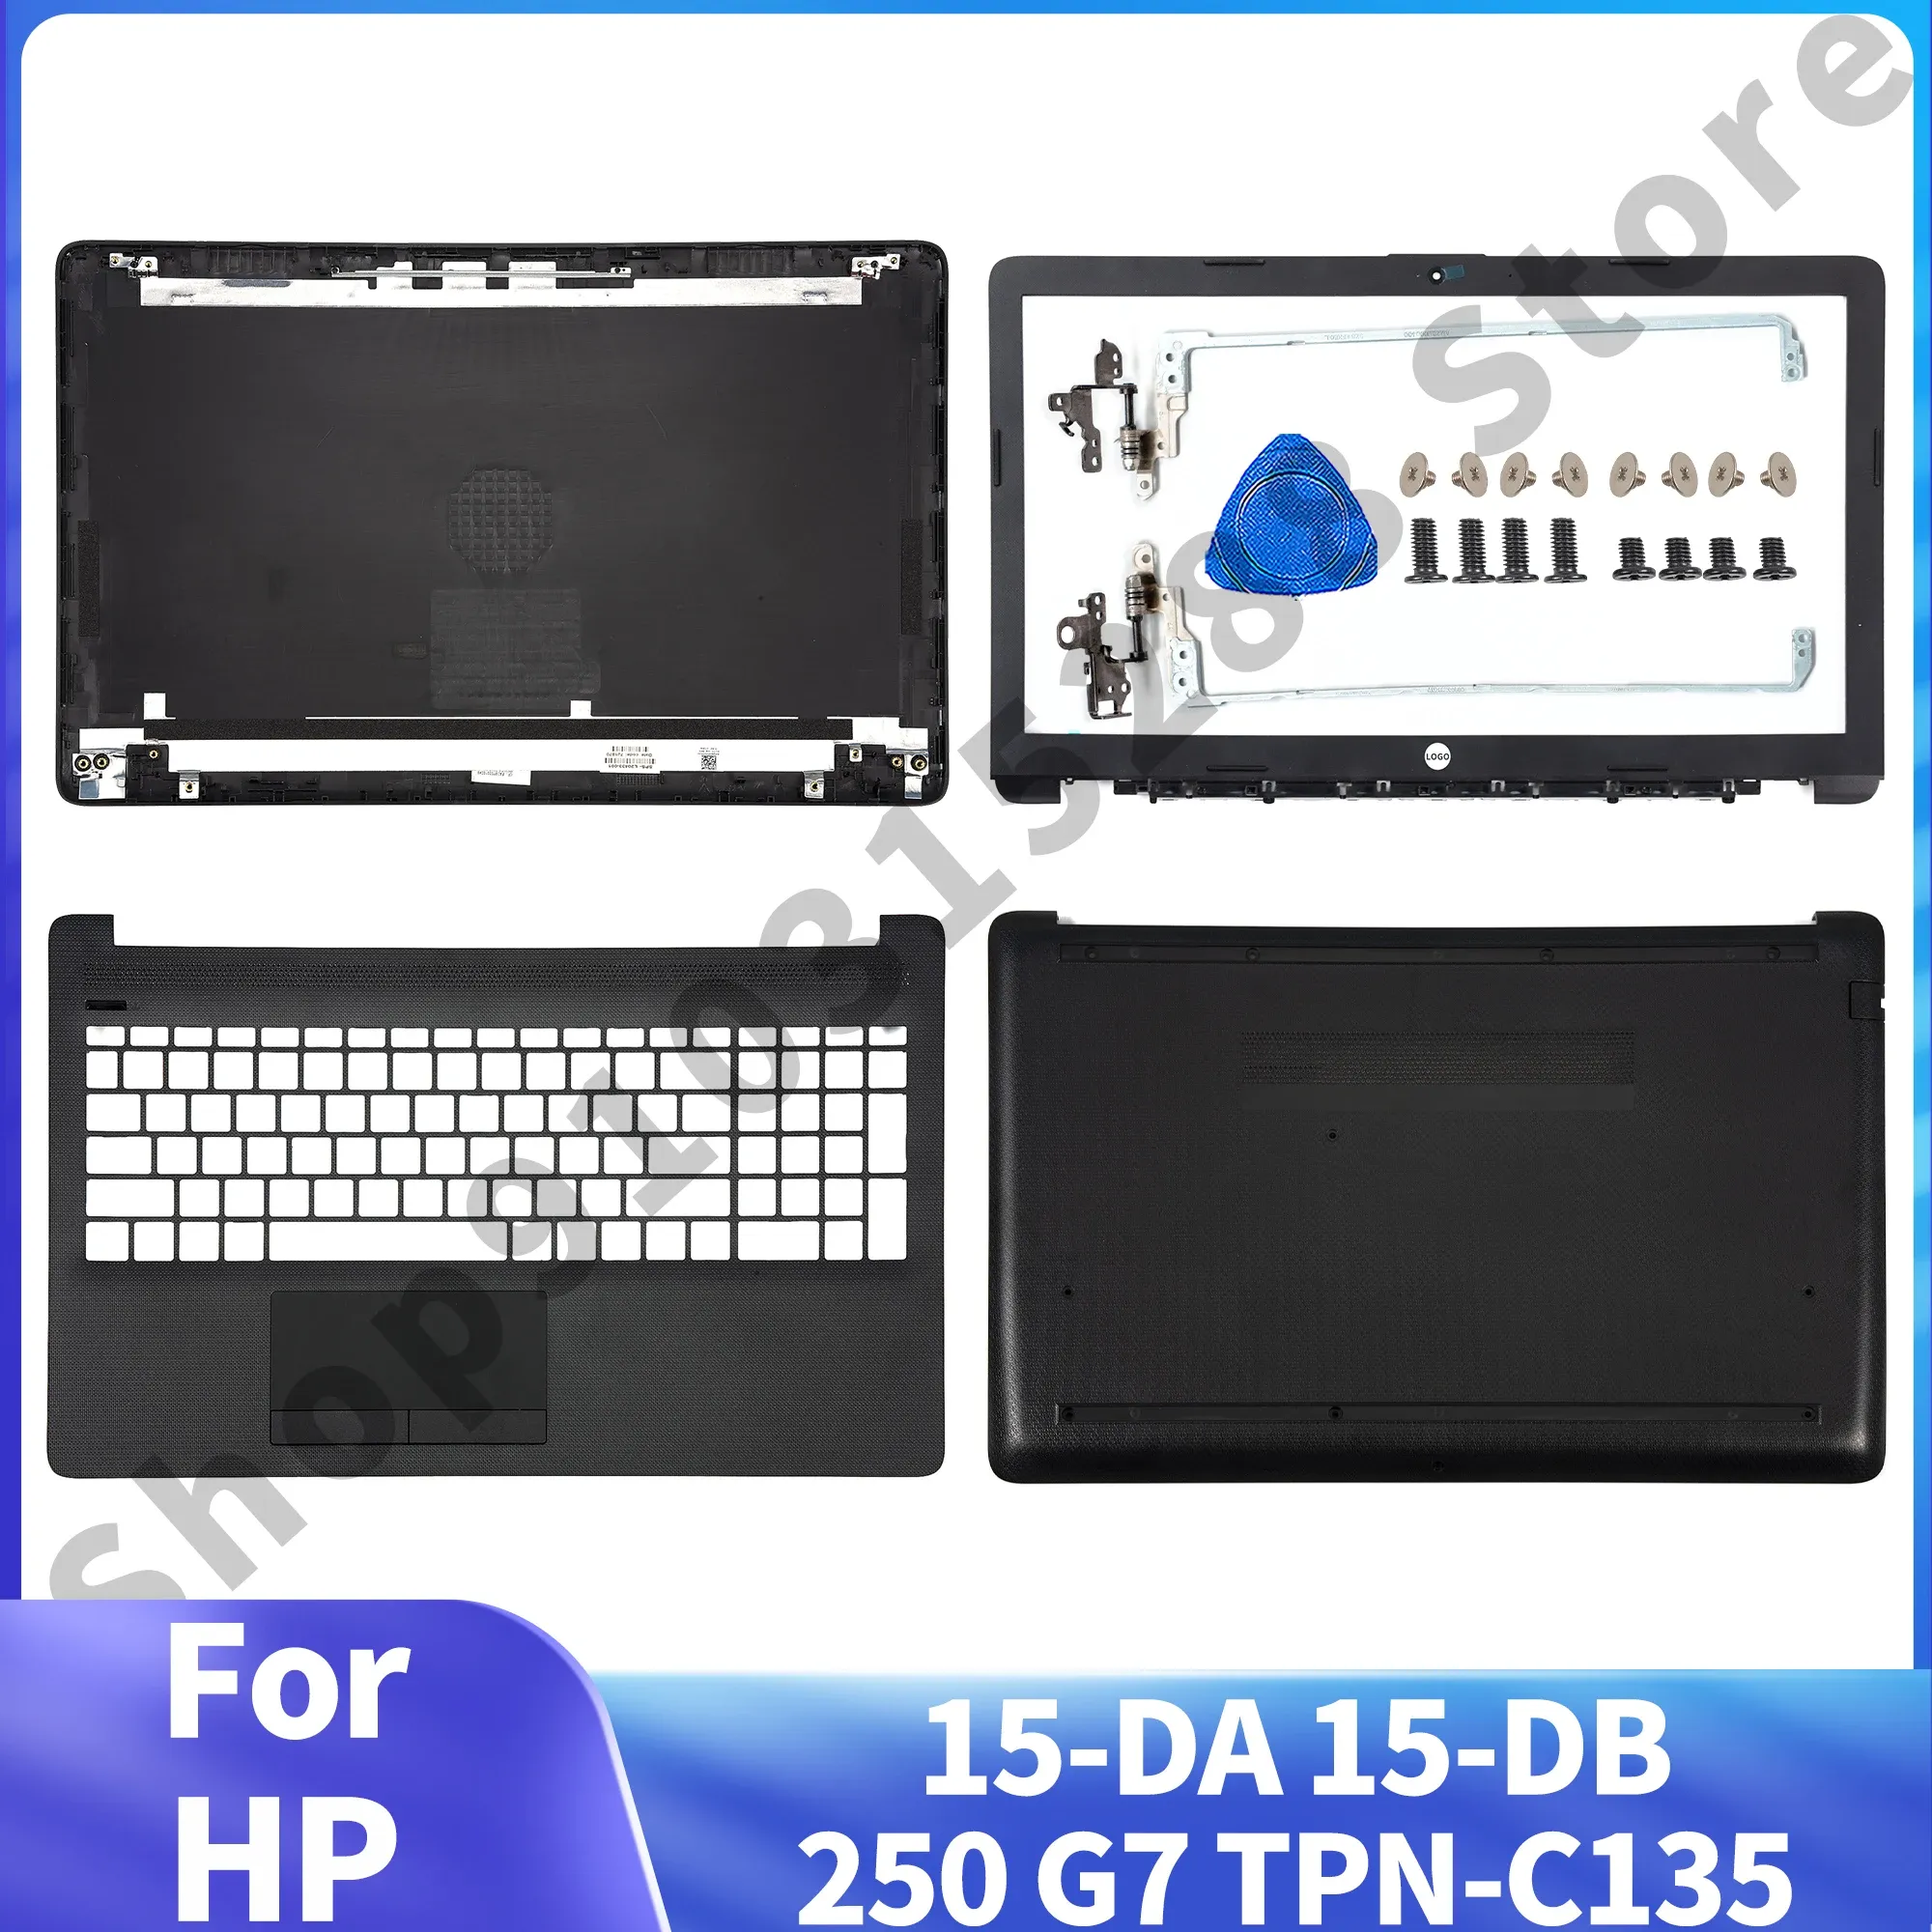 Kılıflar HP 15DB 15DB 250 G7 255 G7 15DA0014DX Dizüstü Bilgisayar LCD arka kapak/ön çerçeve/menteşeler/palmiye/alt kasa için yeni üst sırt çantası